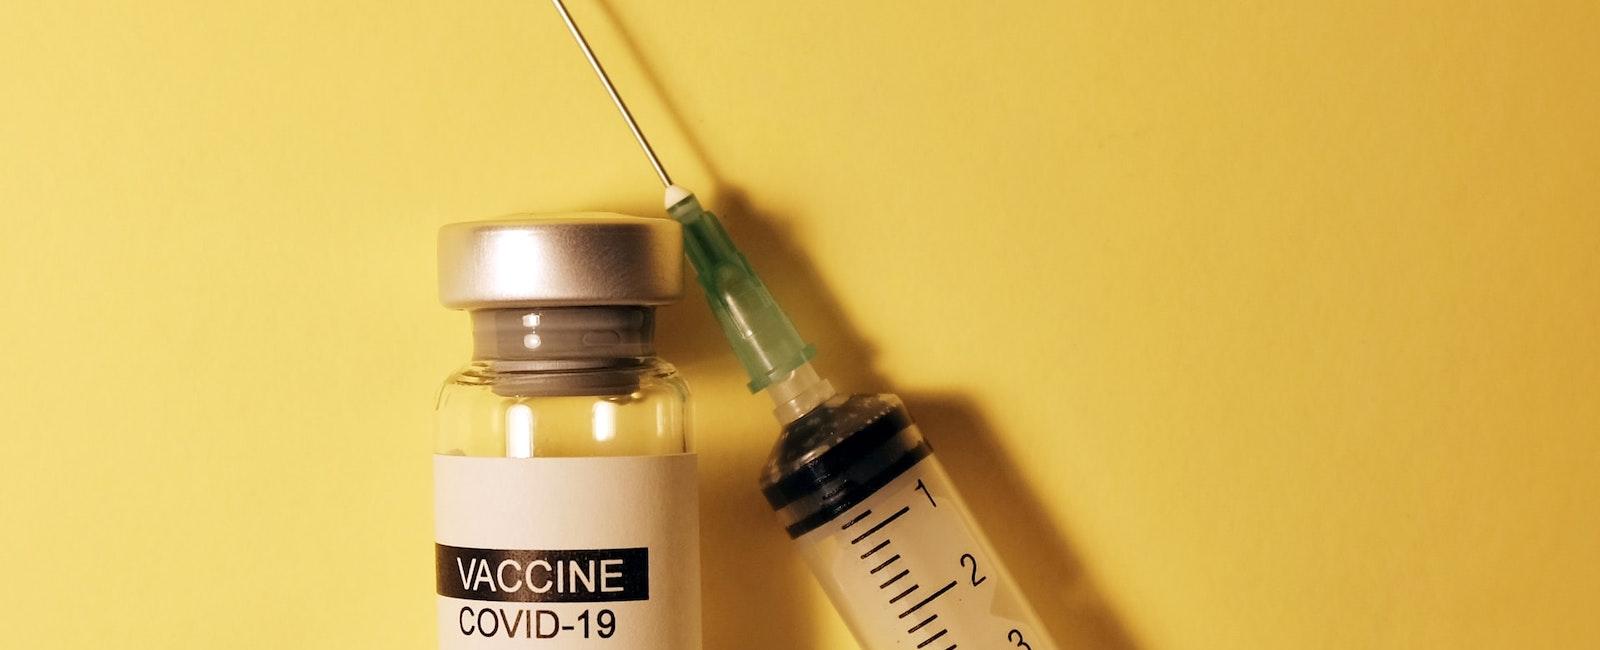 Scientific Doubt Tempers COVID19 Vaccine Optimism